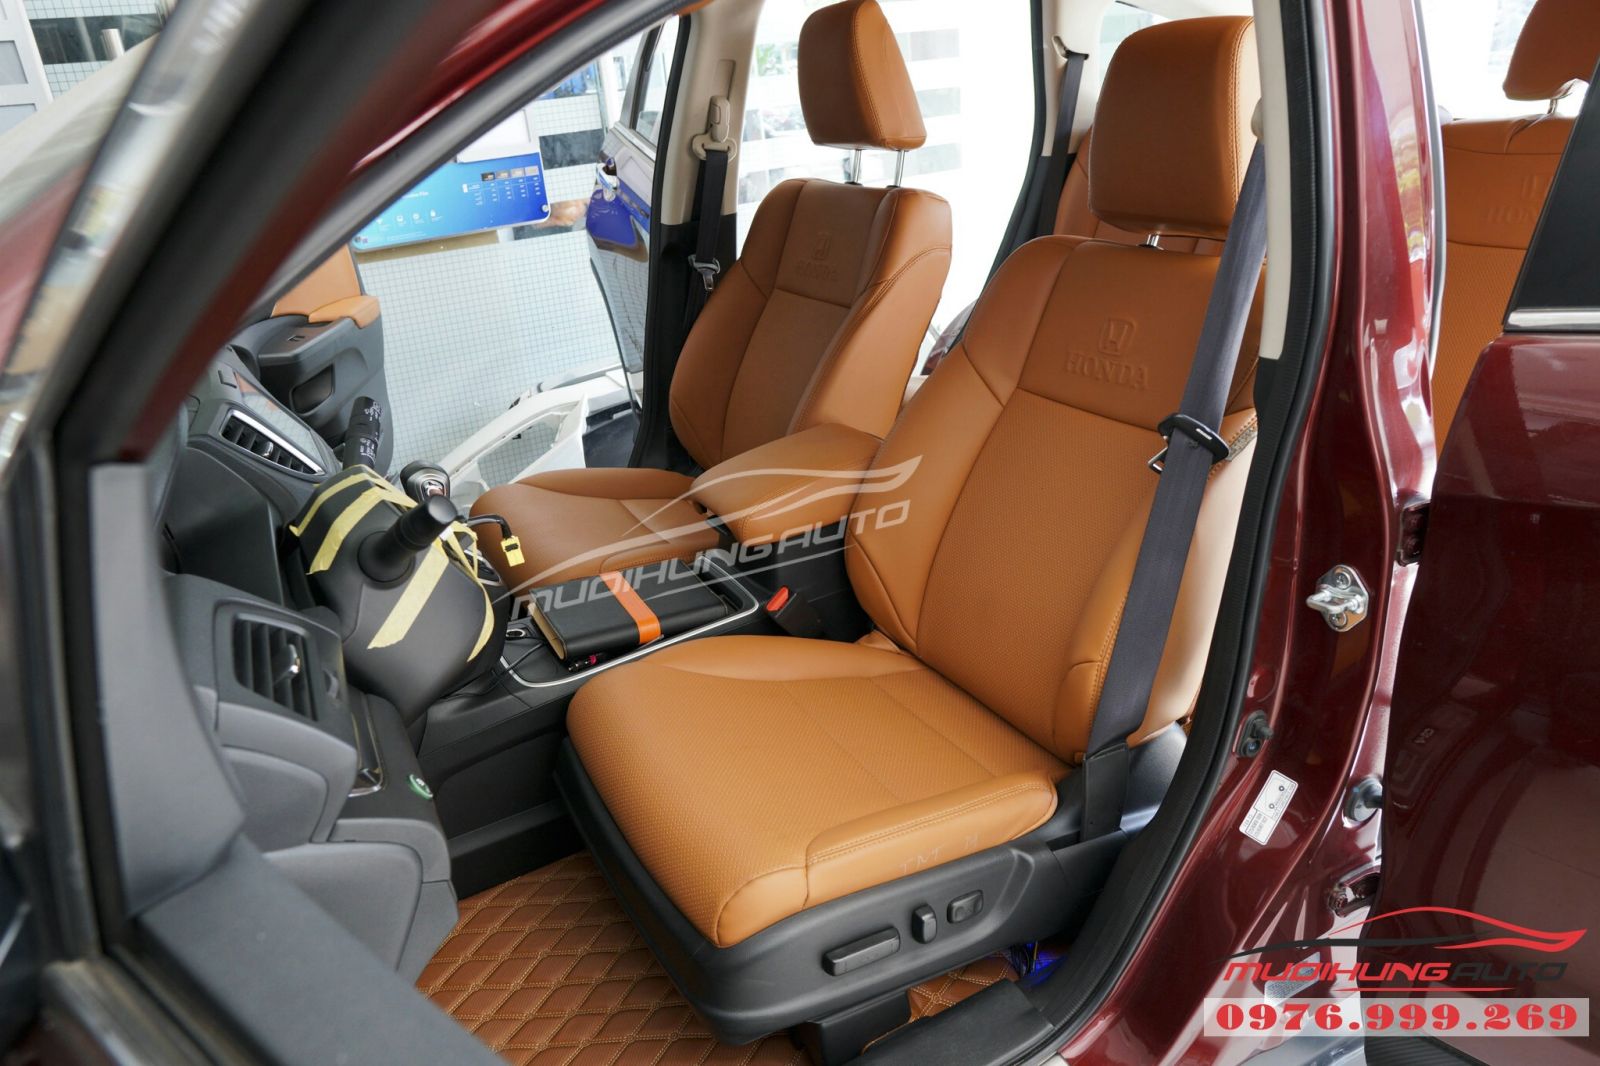 Honda CRV lột xác với ghế bọc da cao cấp 05